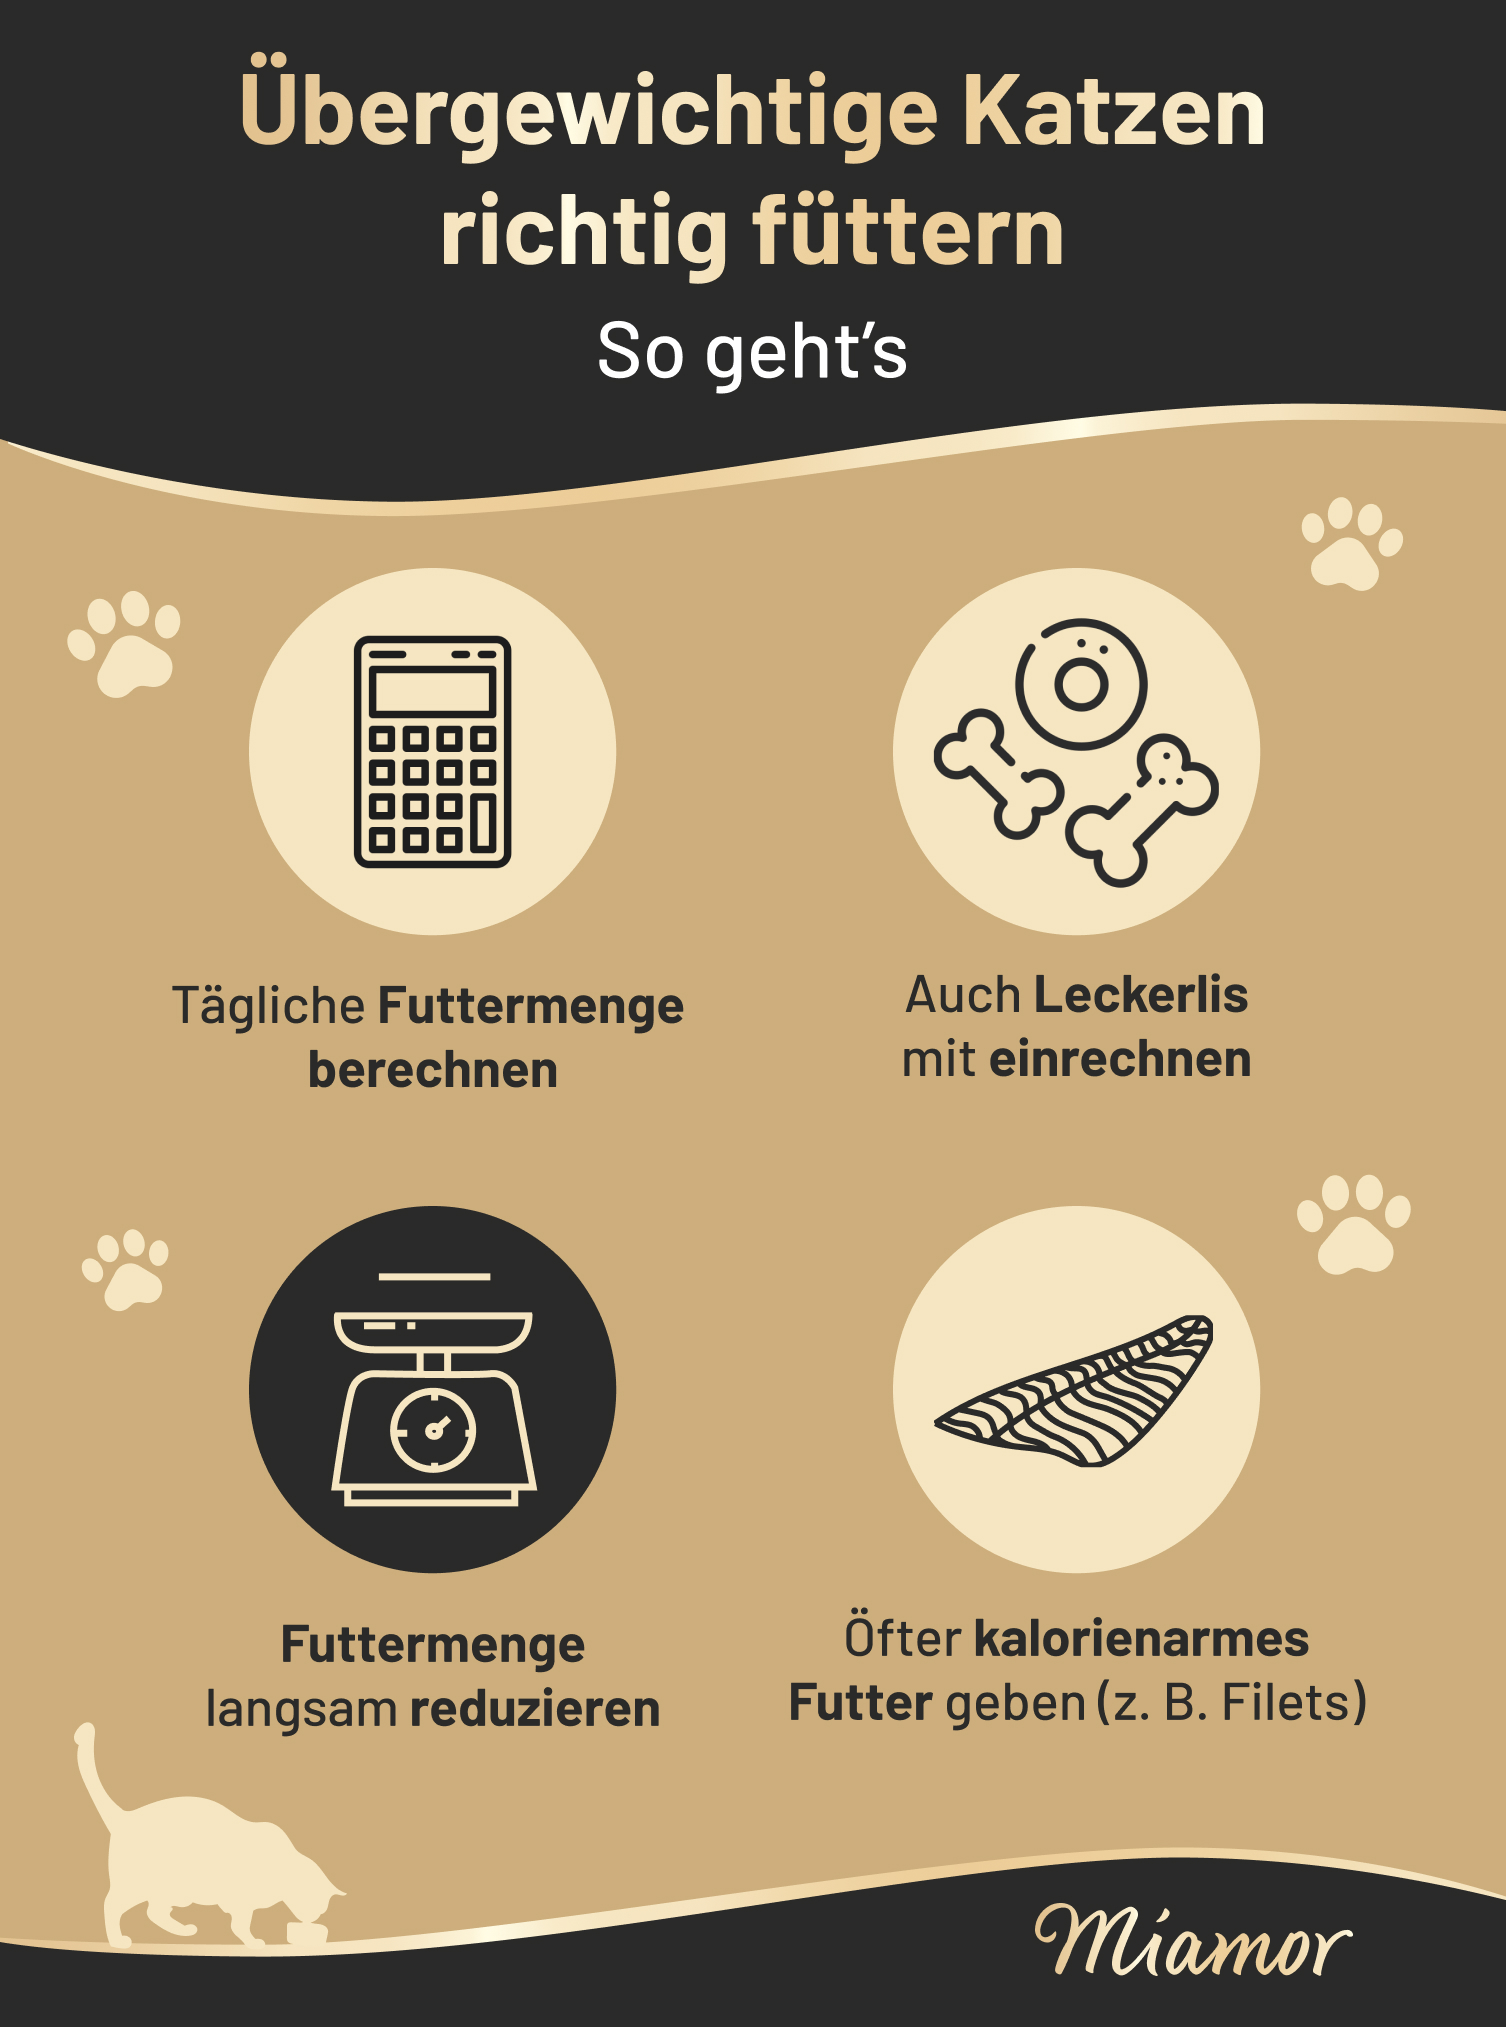 Infografik von Miamor zur Fütterung von übergewichtigen Katzen